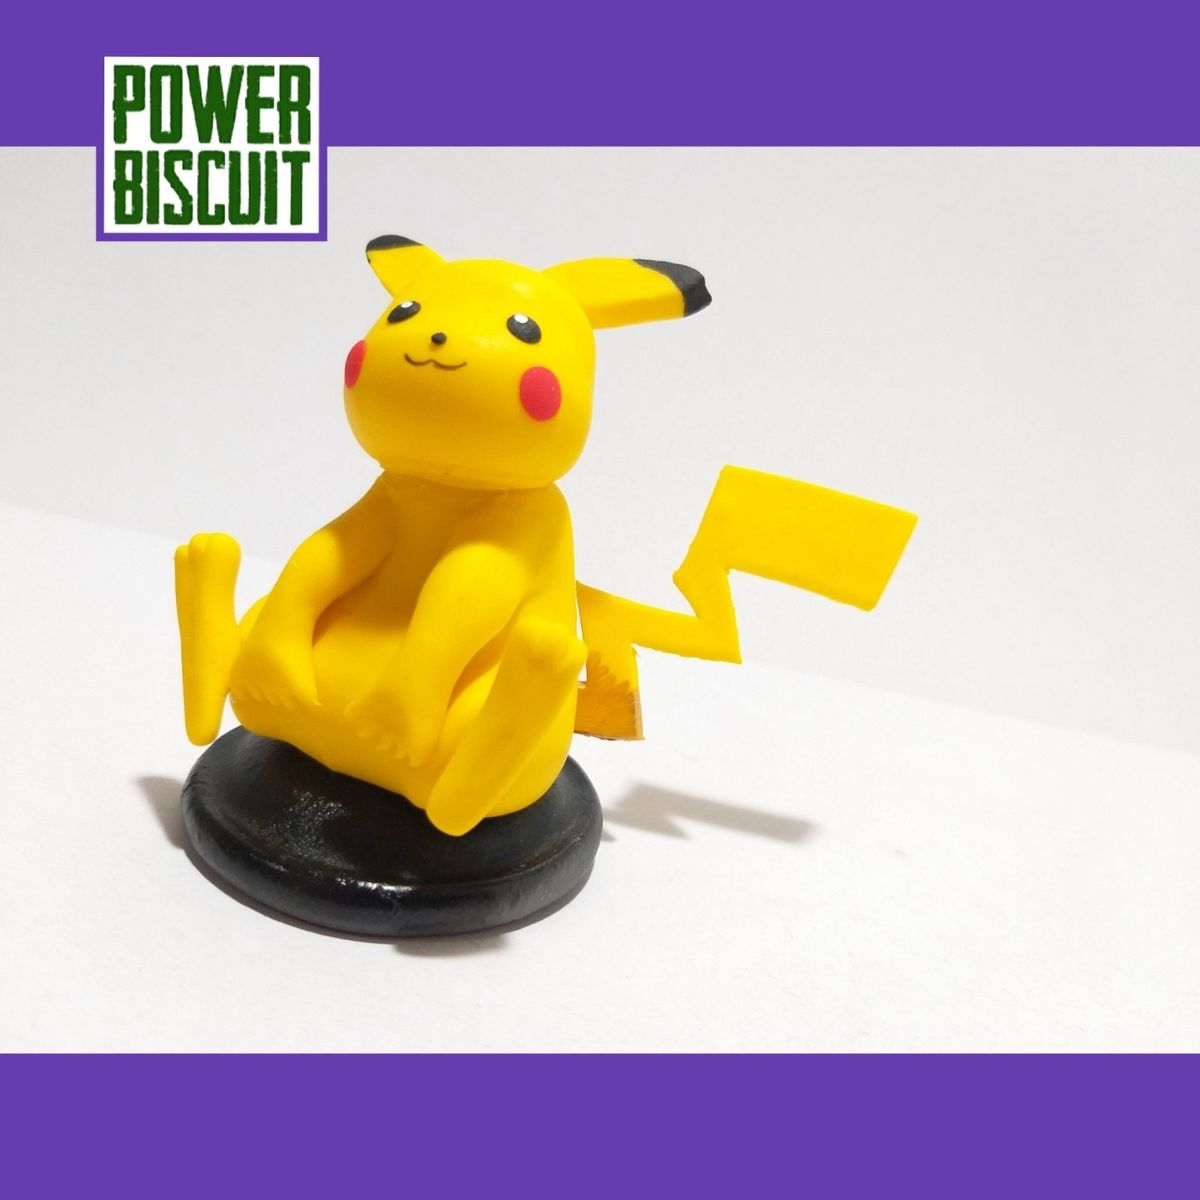 Pokédex 3D - Vendo Pokémon Com Uma Dimensão Adicional